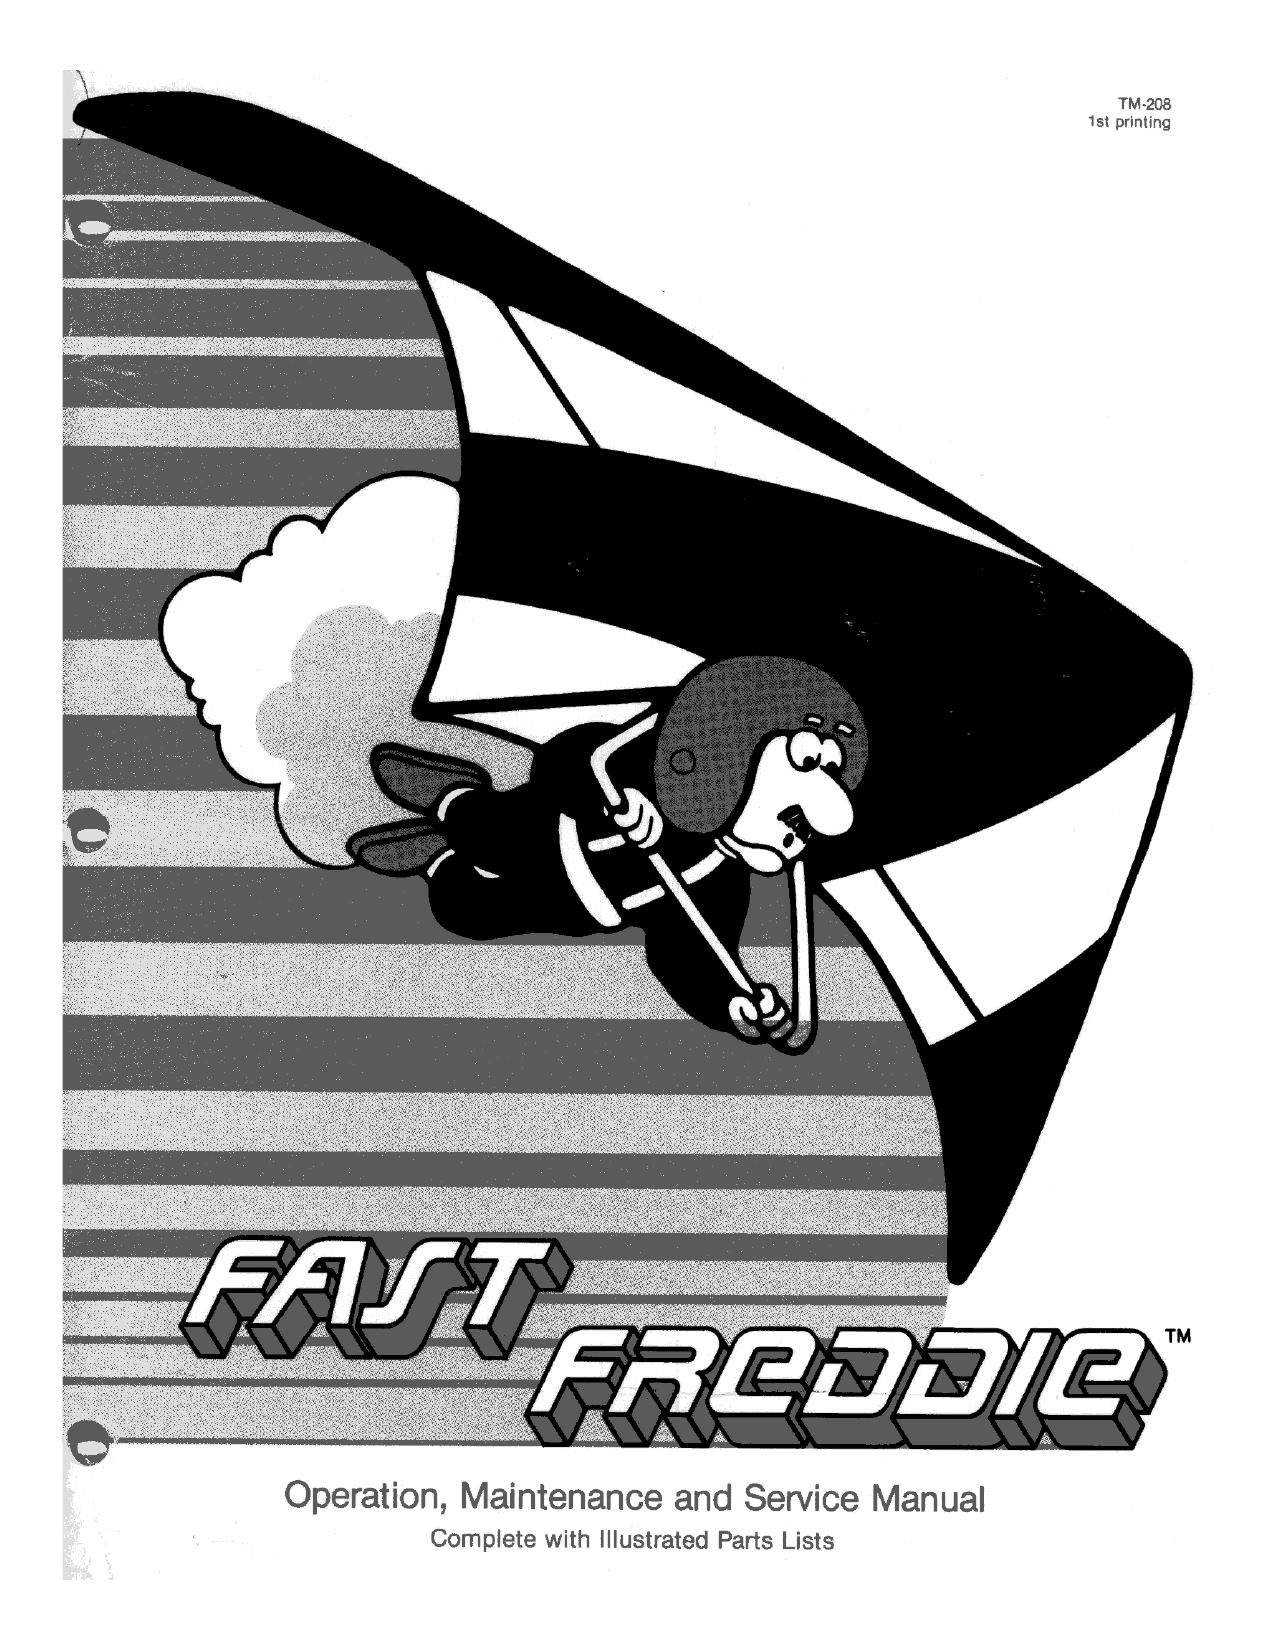 Fast Freddie TM-208 1st Printing